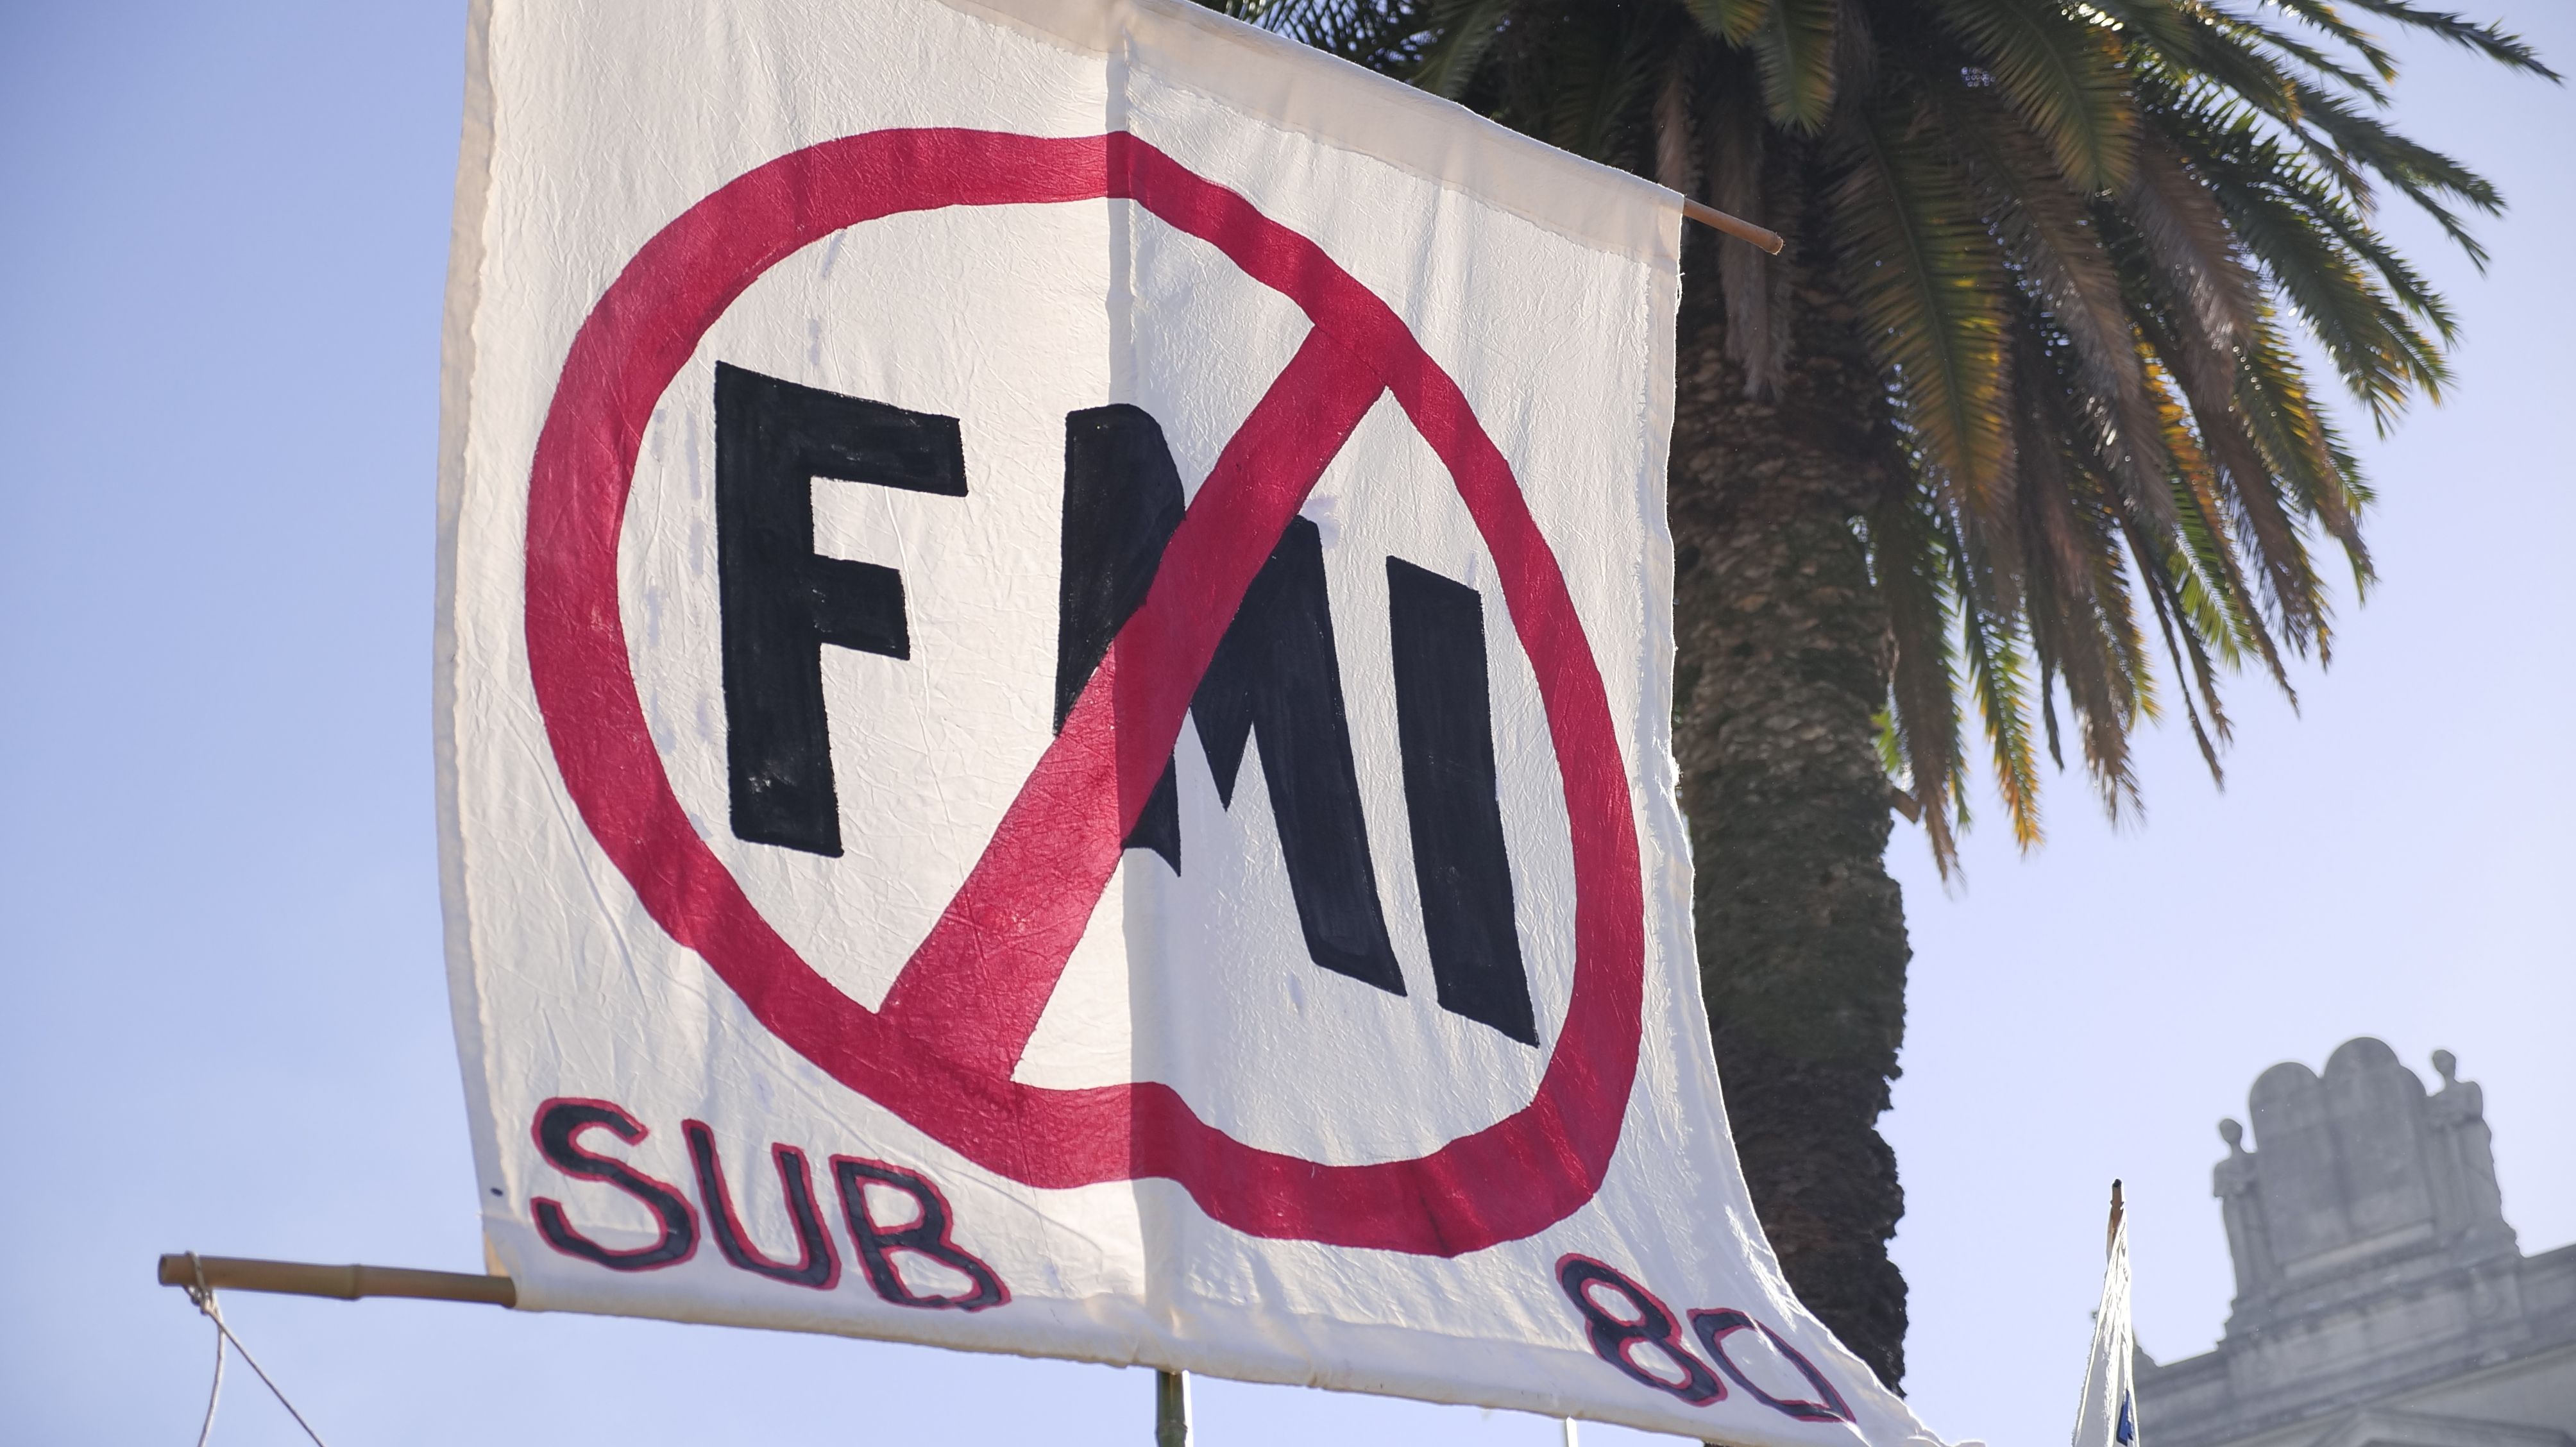 Consignas contra el FMI en la marcha contra la Corte Suprema. (Foto: Daniel Raichijk / TN)